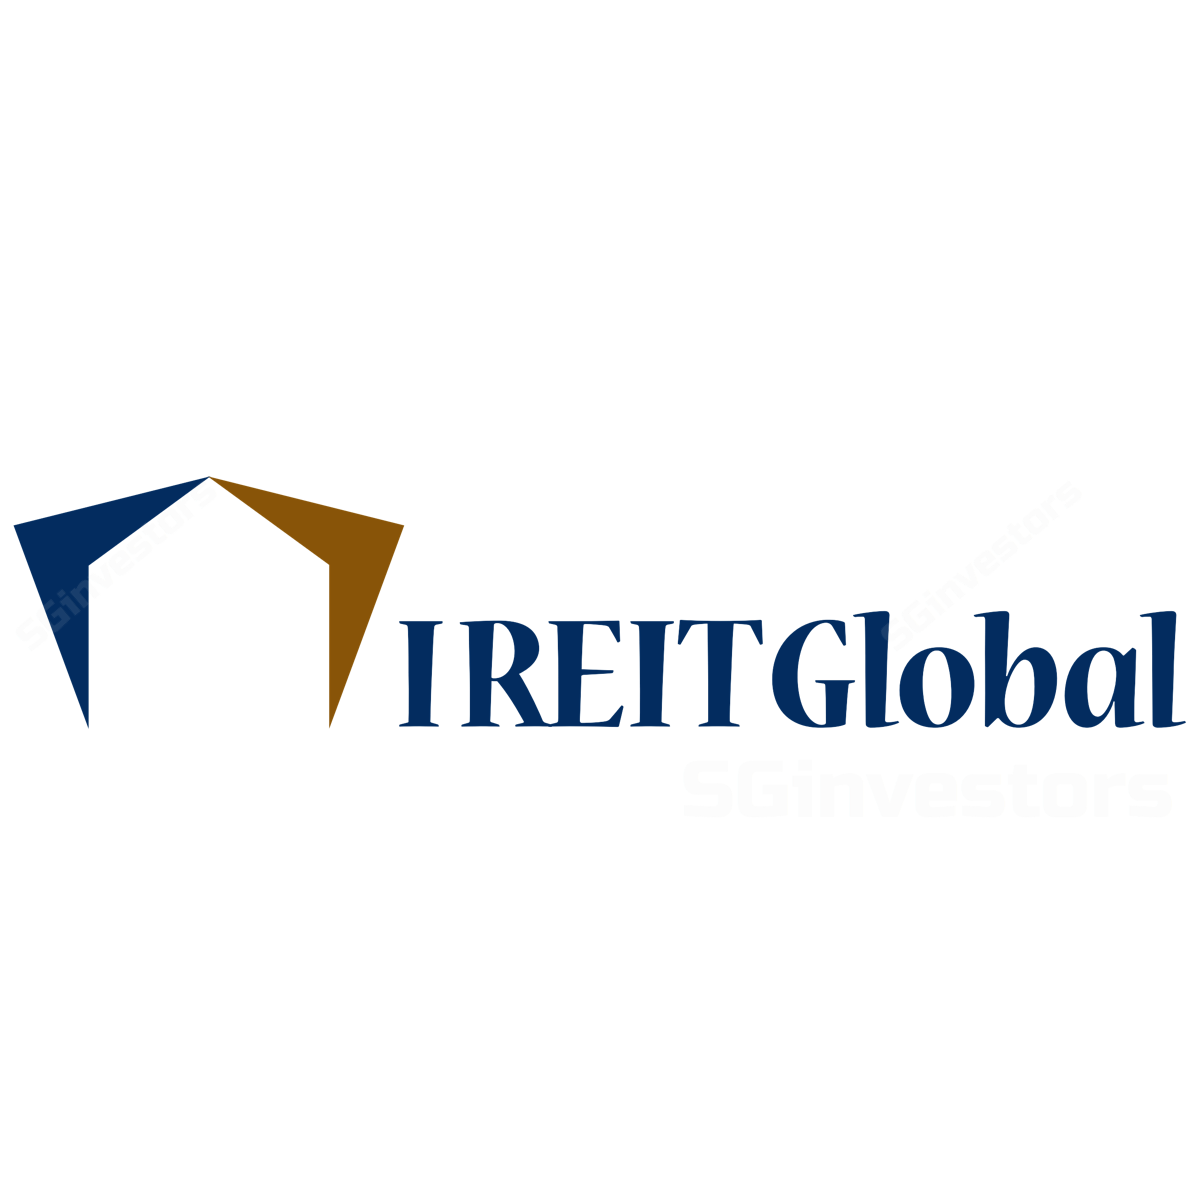 DBS: IREIT Global – Buy Target Price $0.68